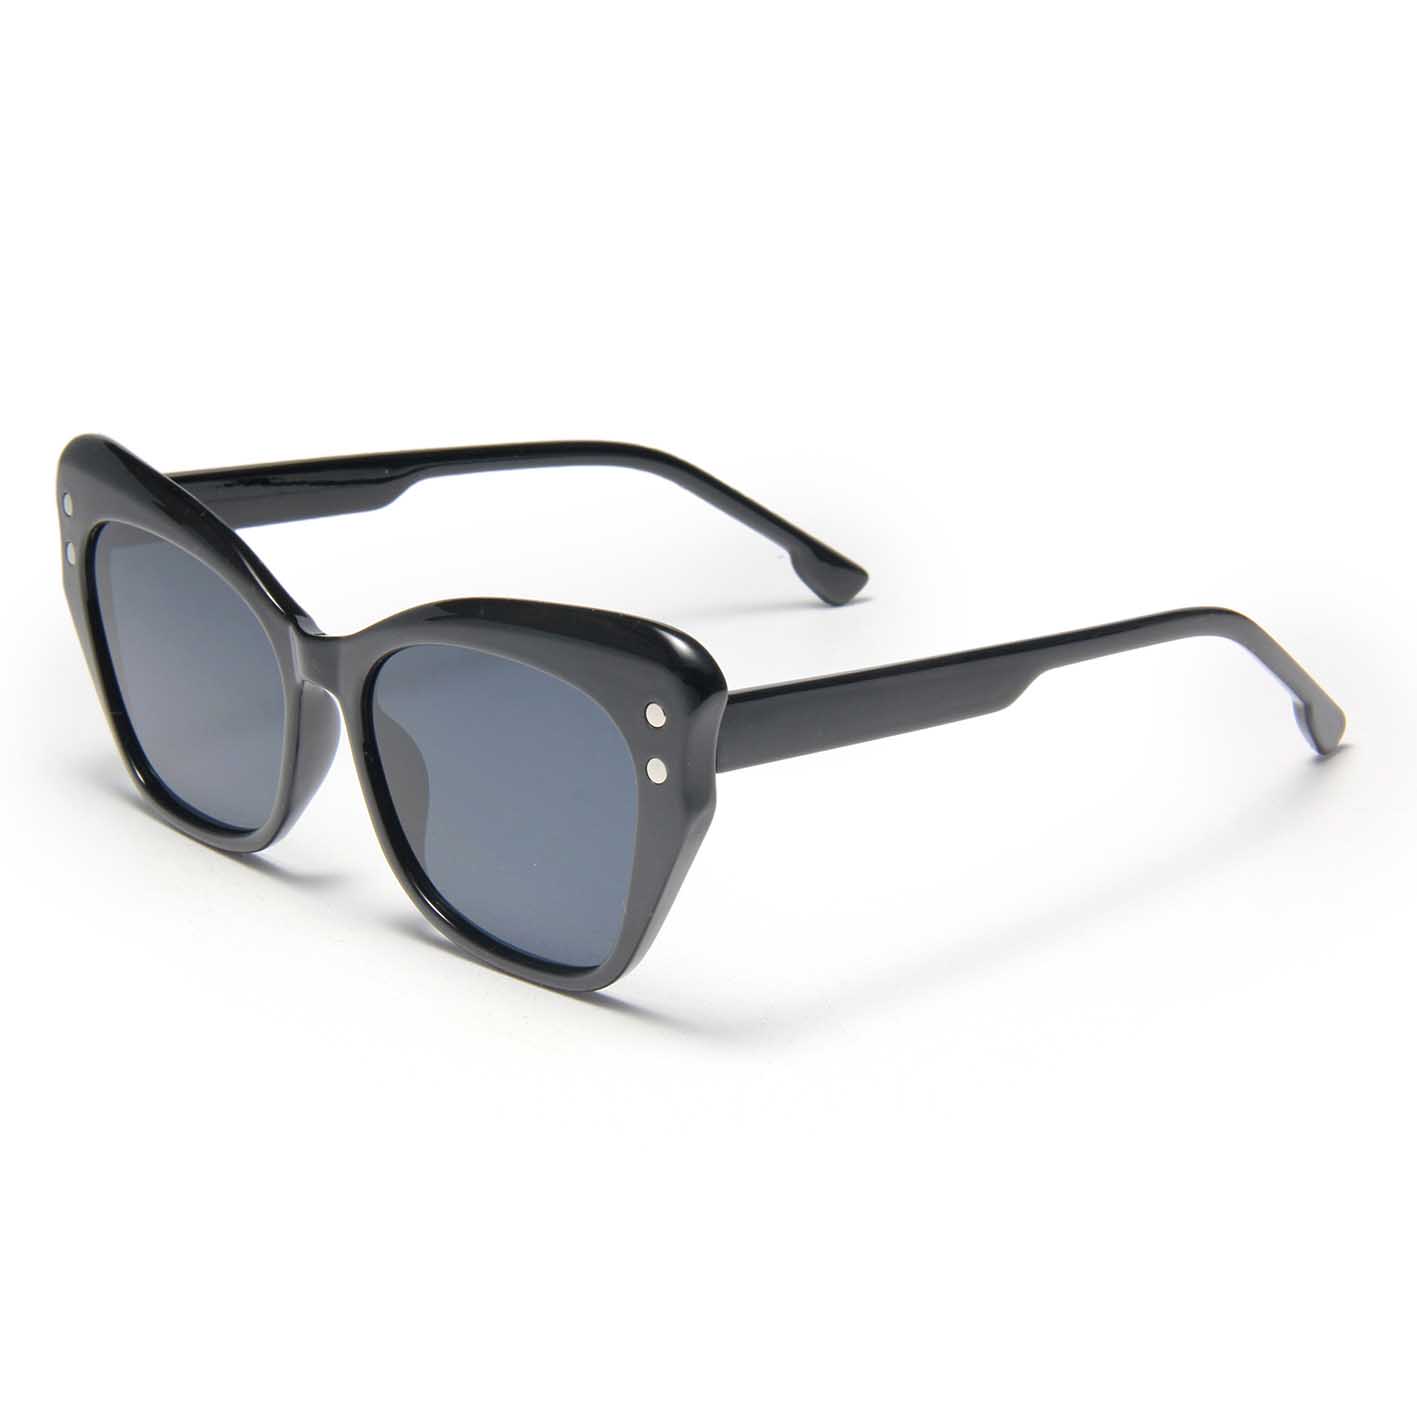 S27022 Gafas de Sol para Hombre, Gafas personalizadas de alta gama para PC, Gafas de sol Occhiali da Sole para mujer, Gafas de sol de lujo con forma de ojo de gato azul